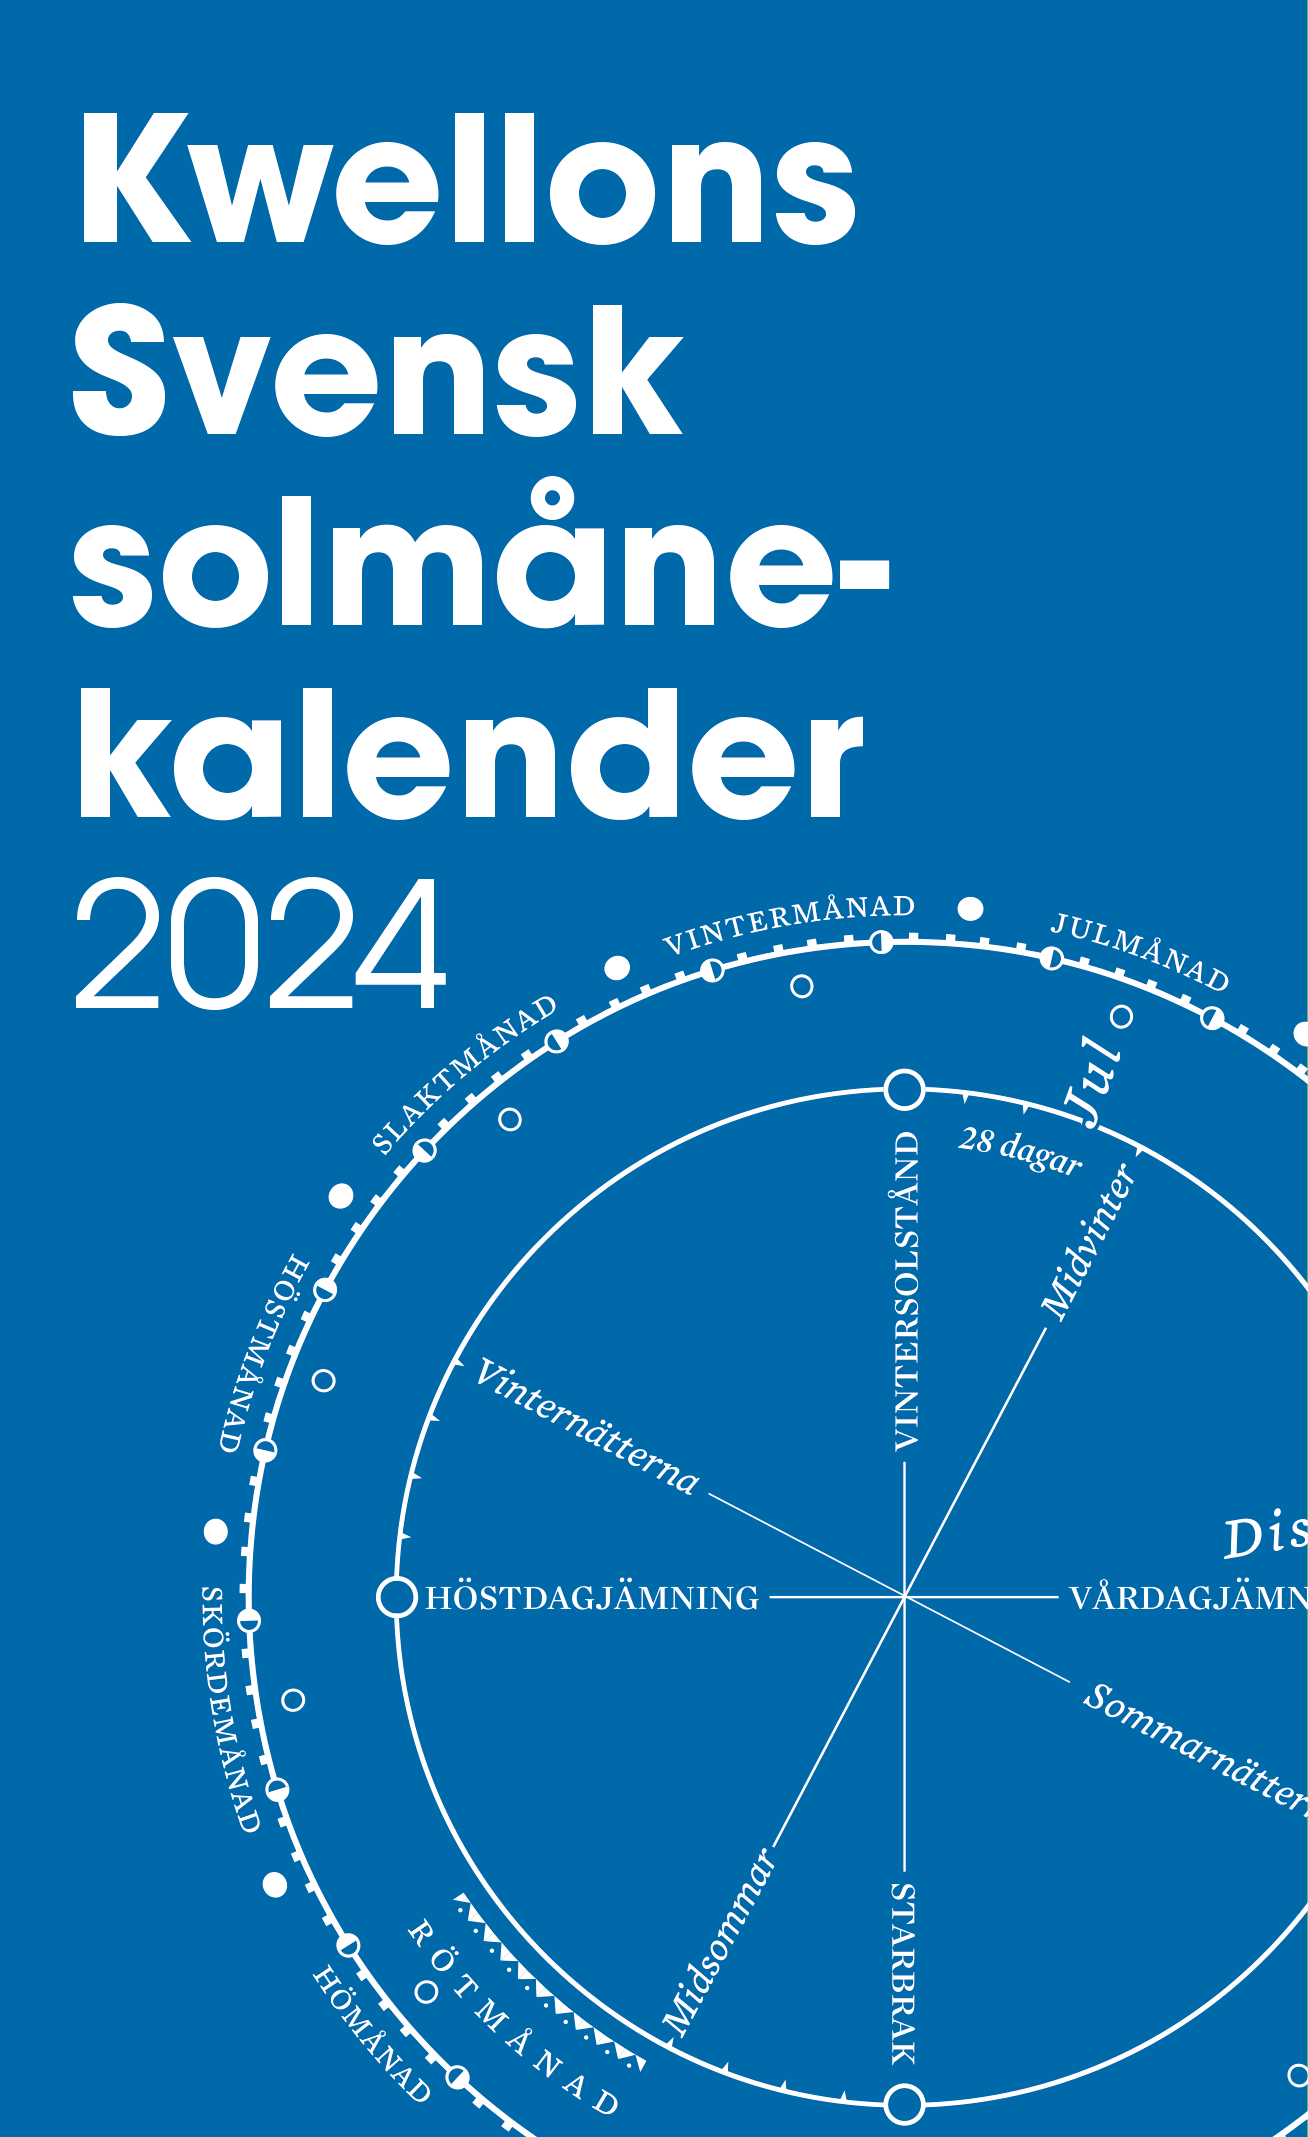 Kwellons svensk solmånekalender 2024